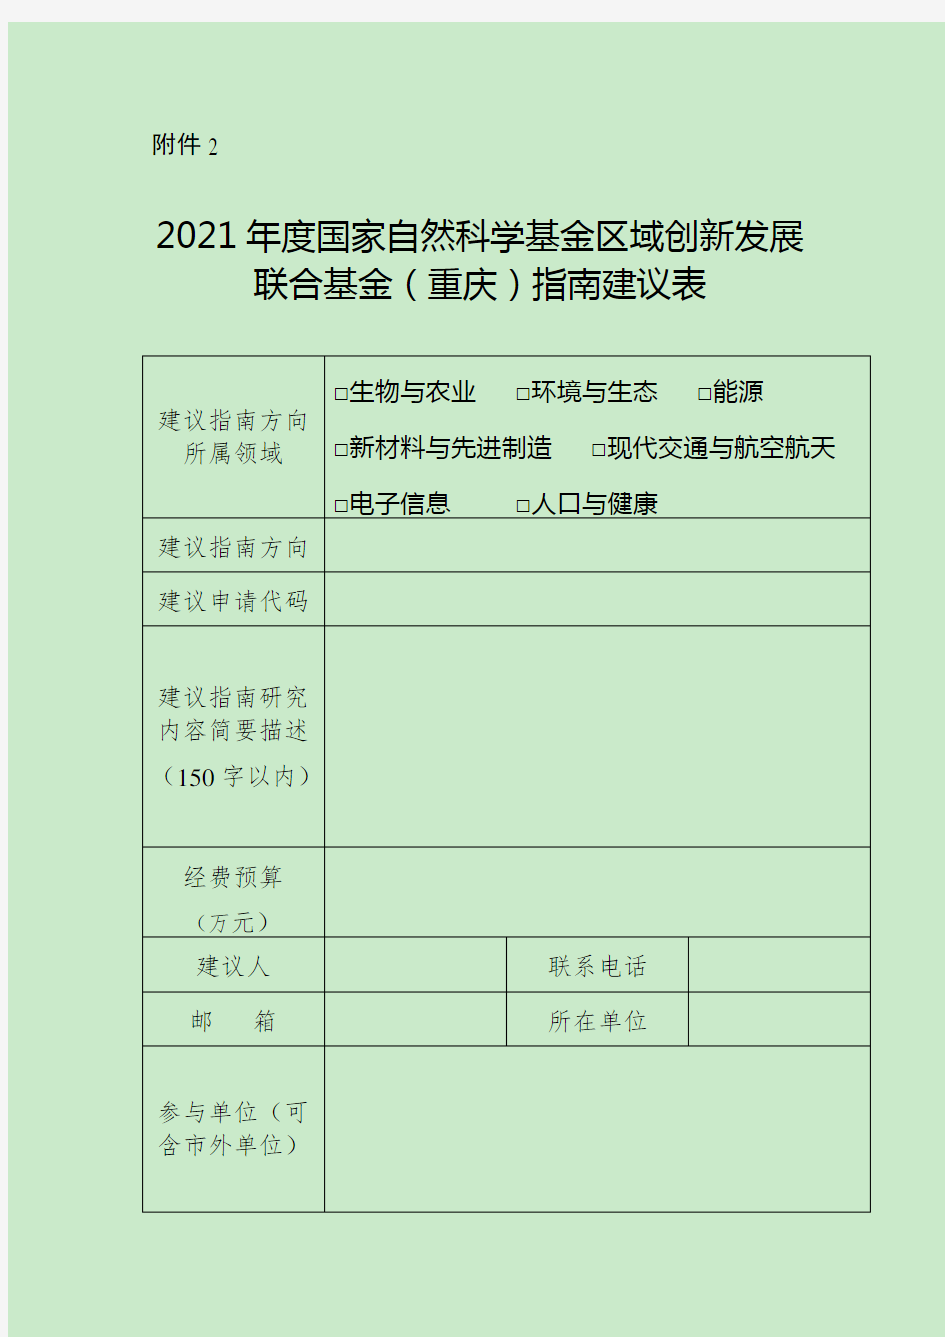 2021年度国家自然科学基金区域创新发展联合基金(重庆)指南建议表(定稿)